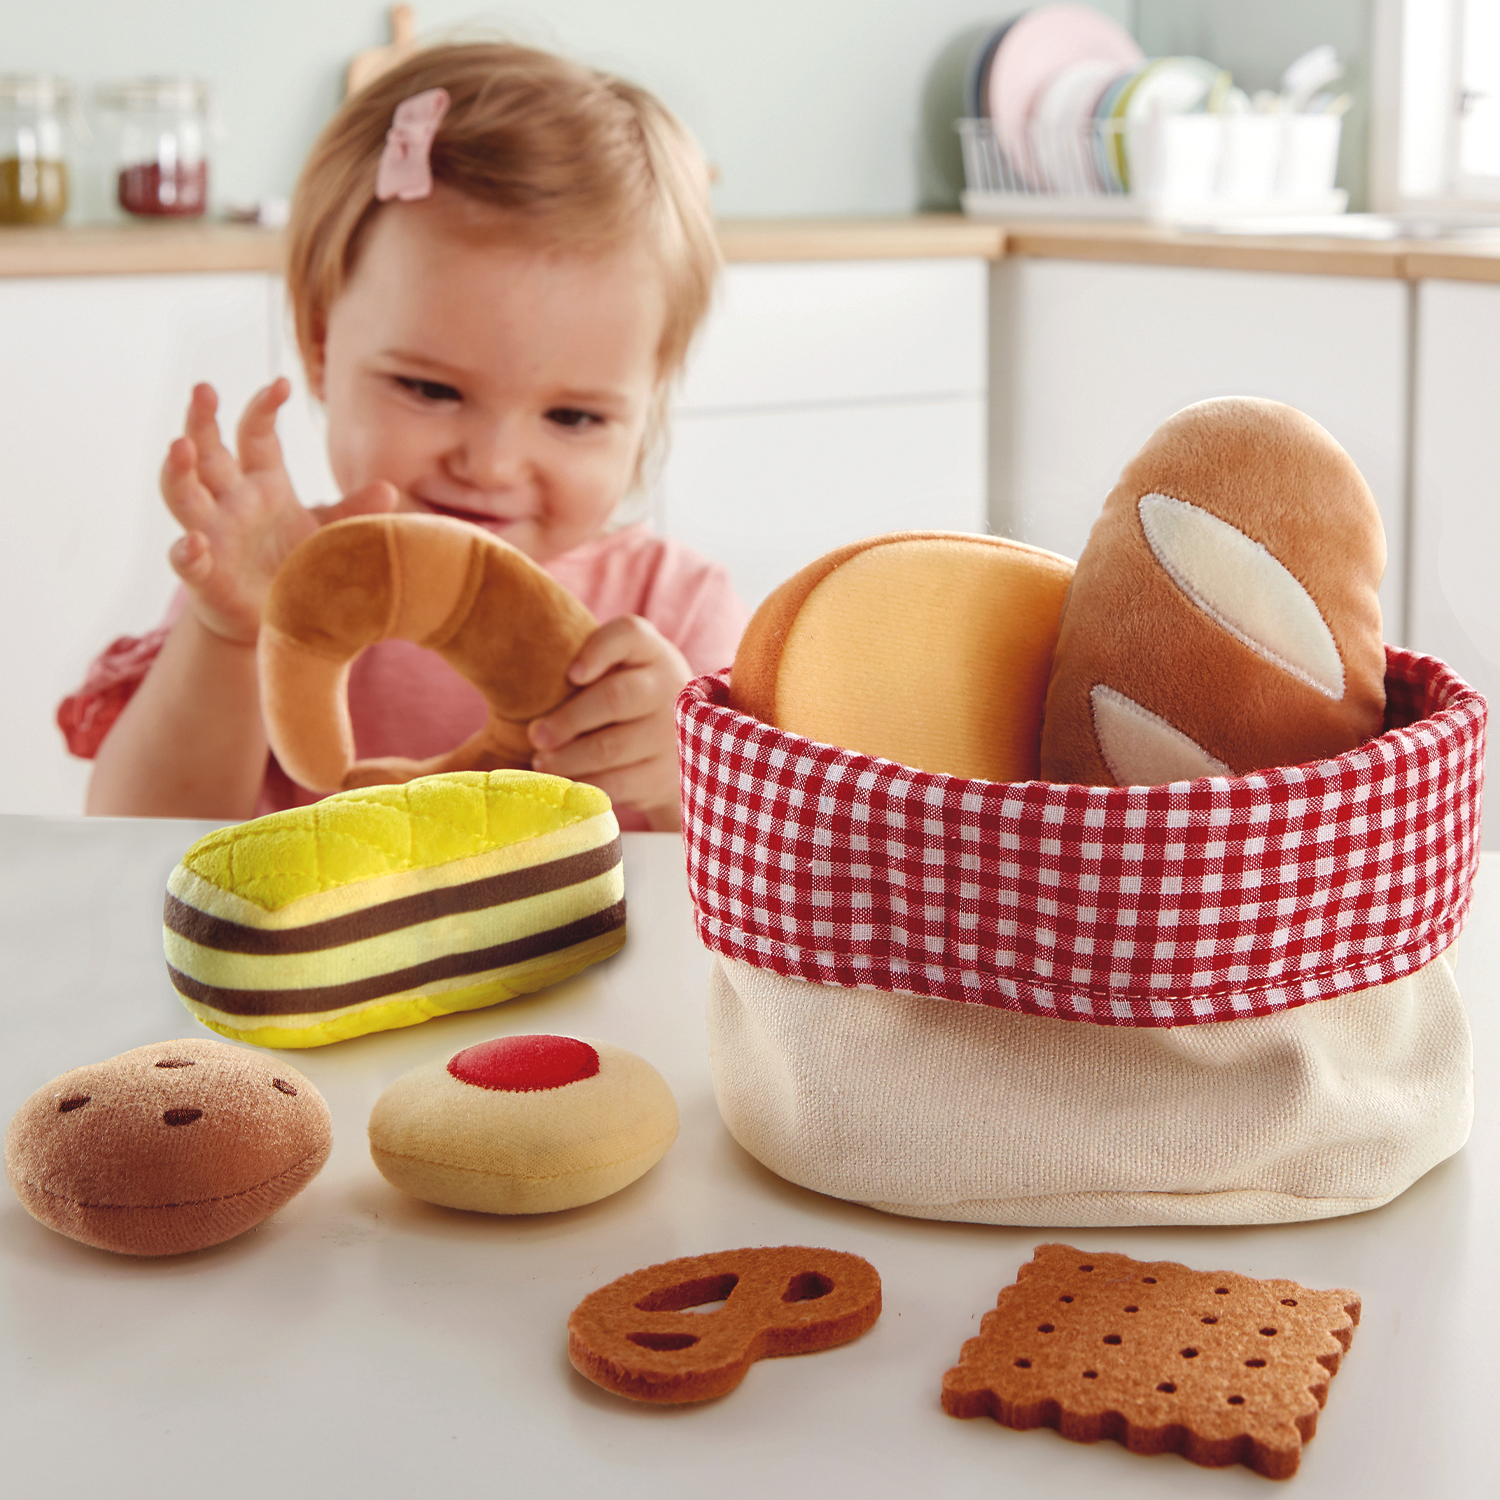 Игровой набор Корзина хлеба Hape E3168_HP набор детской посуды top chef с корзинкой на 3 персоны